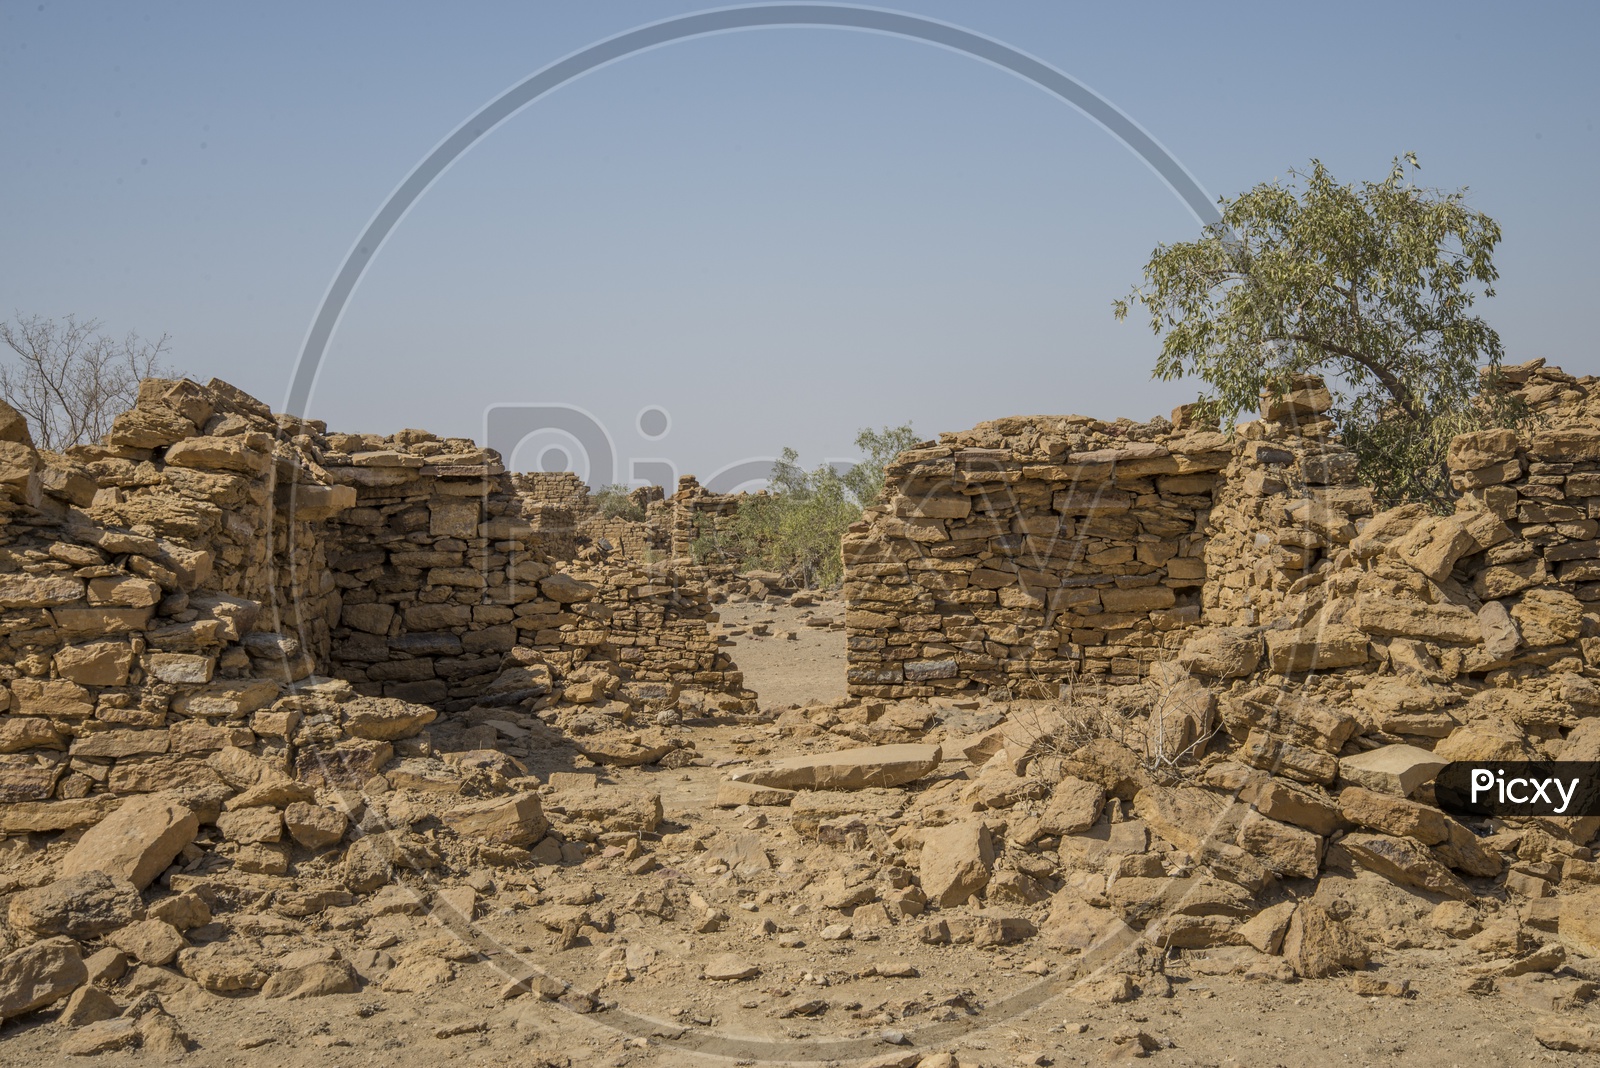 Kuldhara Village, near Jaisalmer